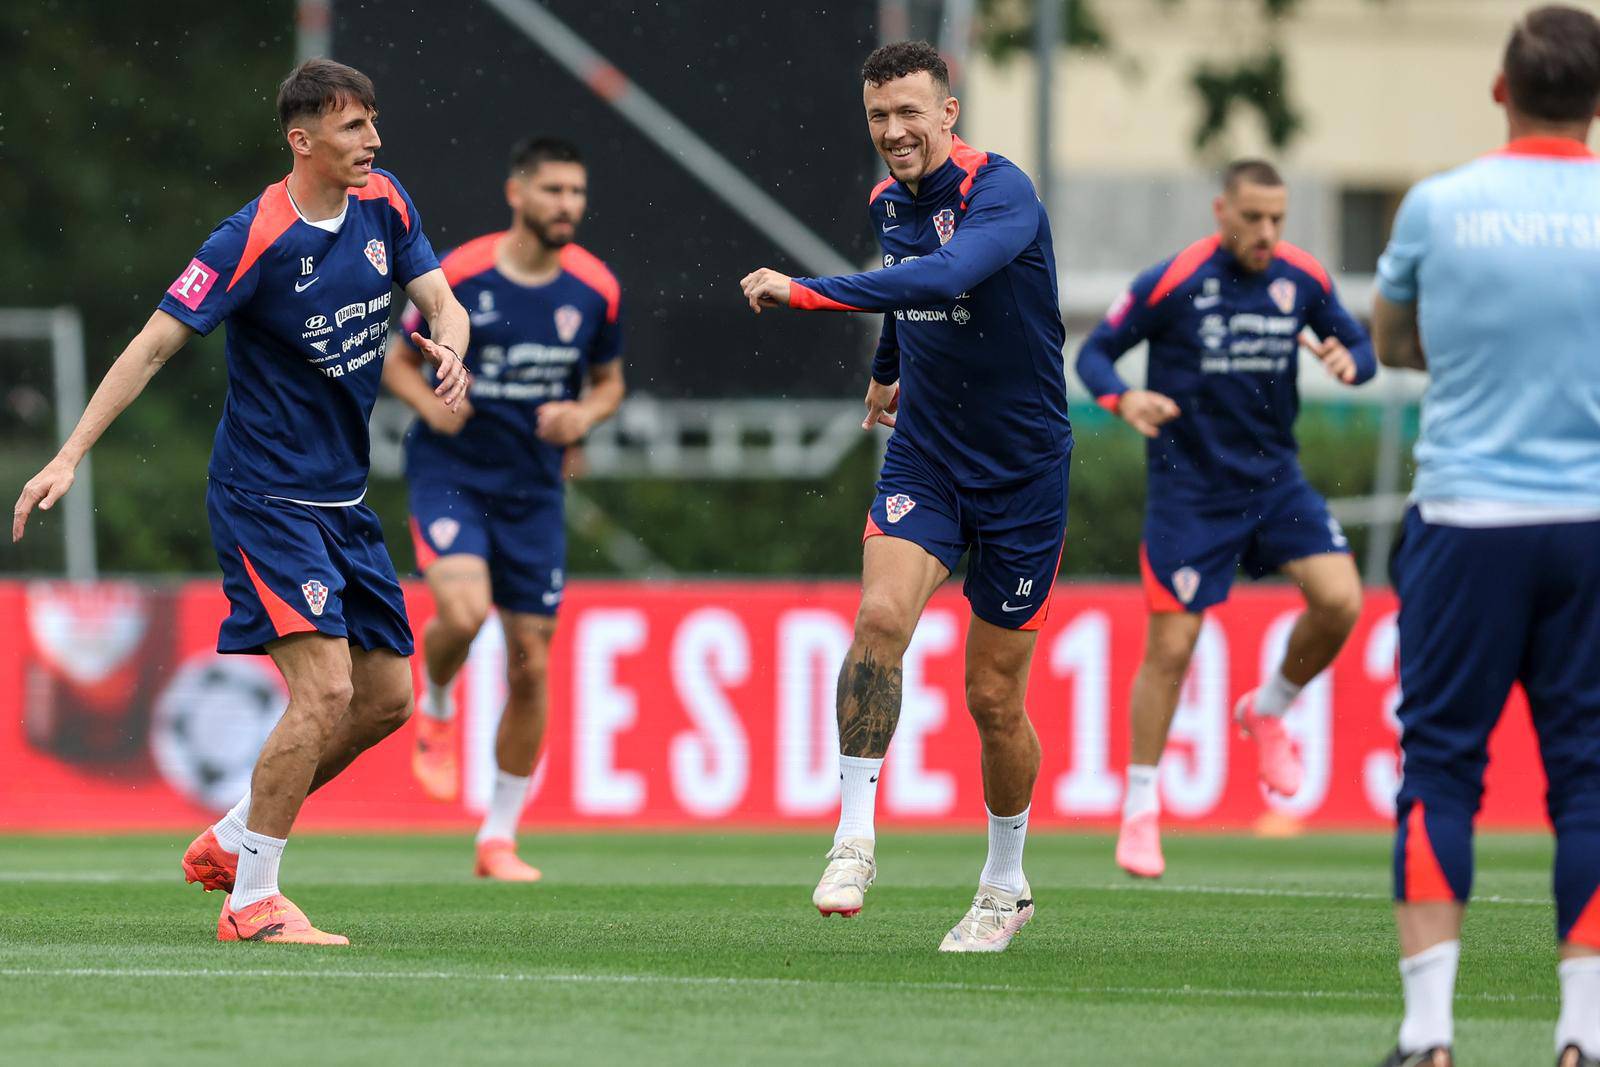 Lisabon: Trening hrvatske nogometne reprezentacije uoči sutrašnje prijateljske utakmice protiv Portugala